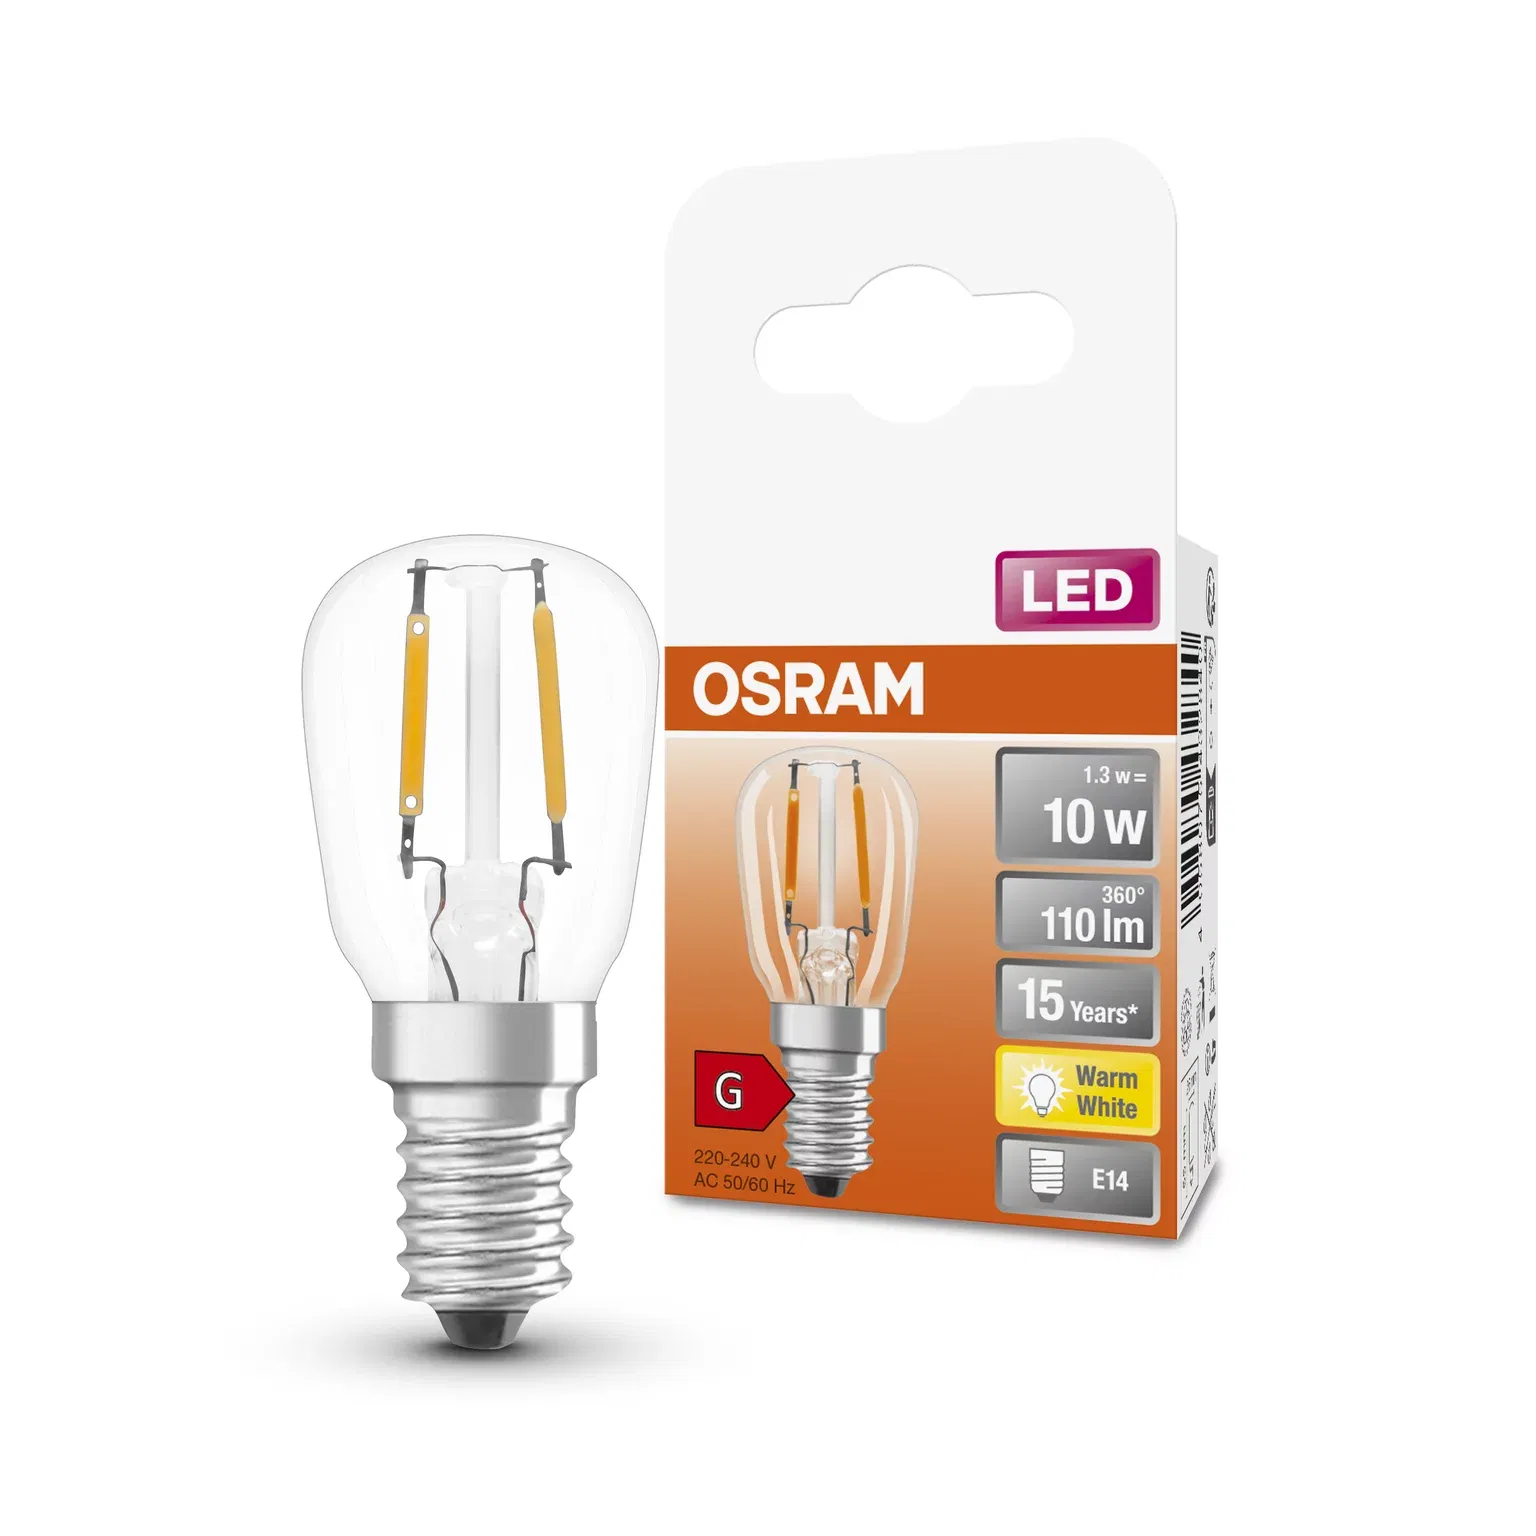 LED lemputė OSRAM Special T26 12, šaldytuvui, E14, 2,2W, 2700 K, 110 lm, šiltai baltos sp. - 3